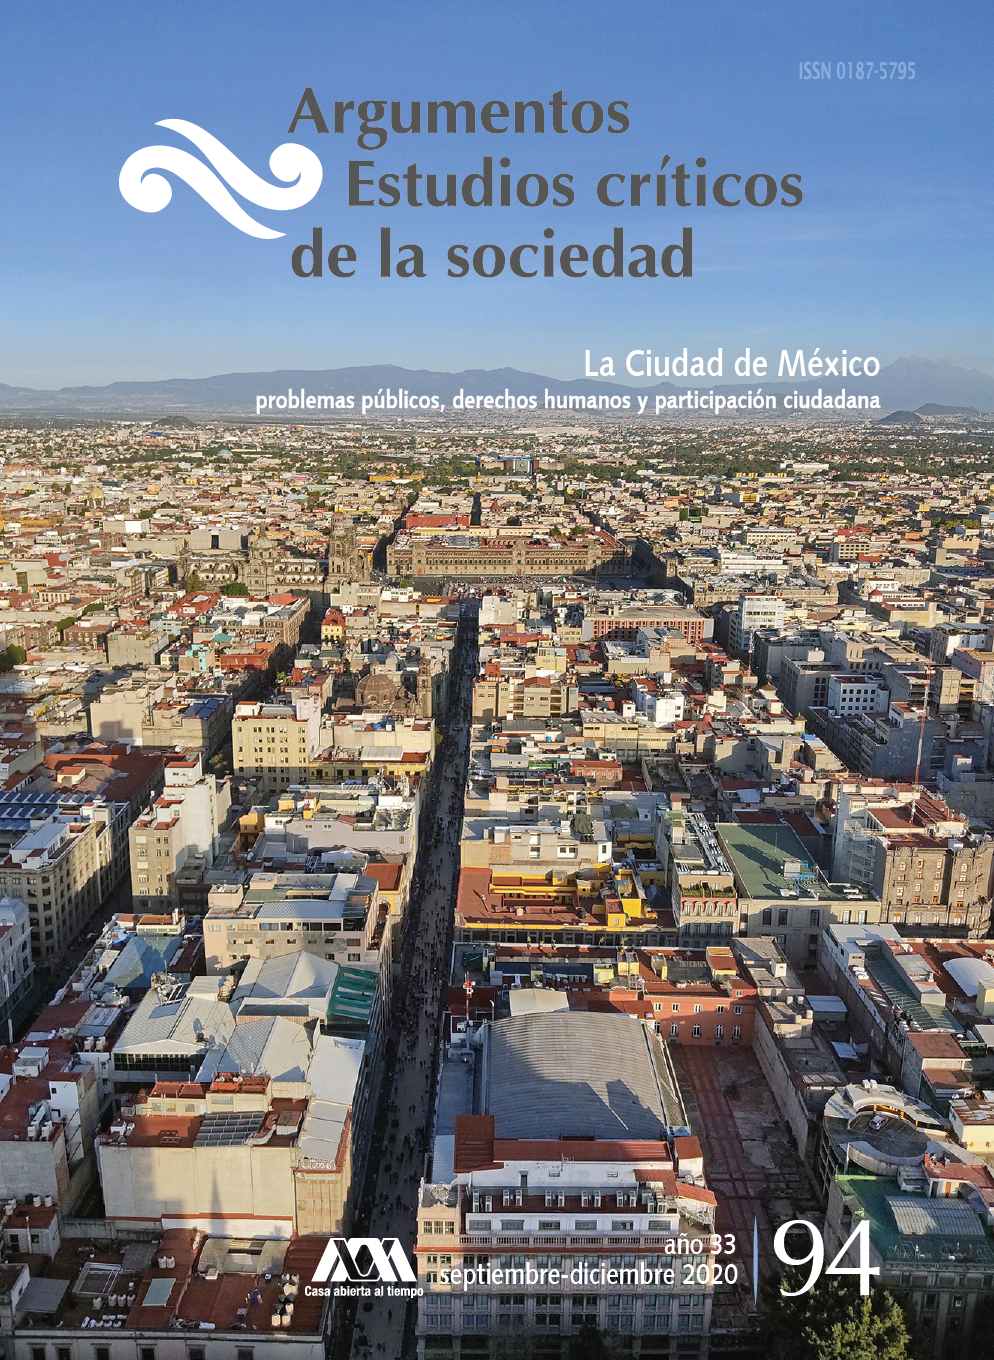 					Ver Núm. 94: "La Ciudad de México, problemas públicos, derechos humanos y participación ciudadana"
				